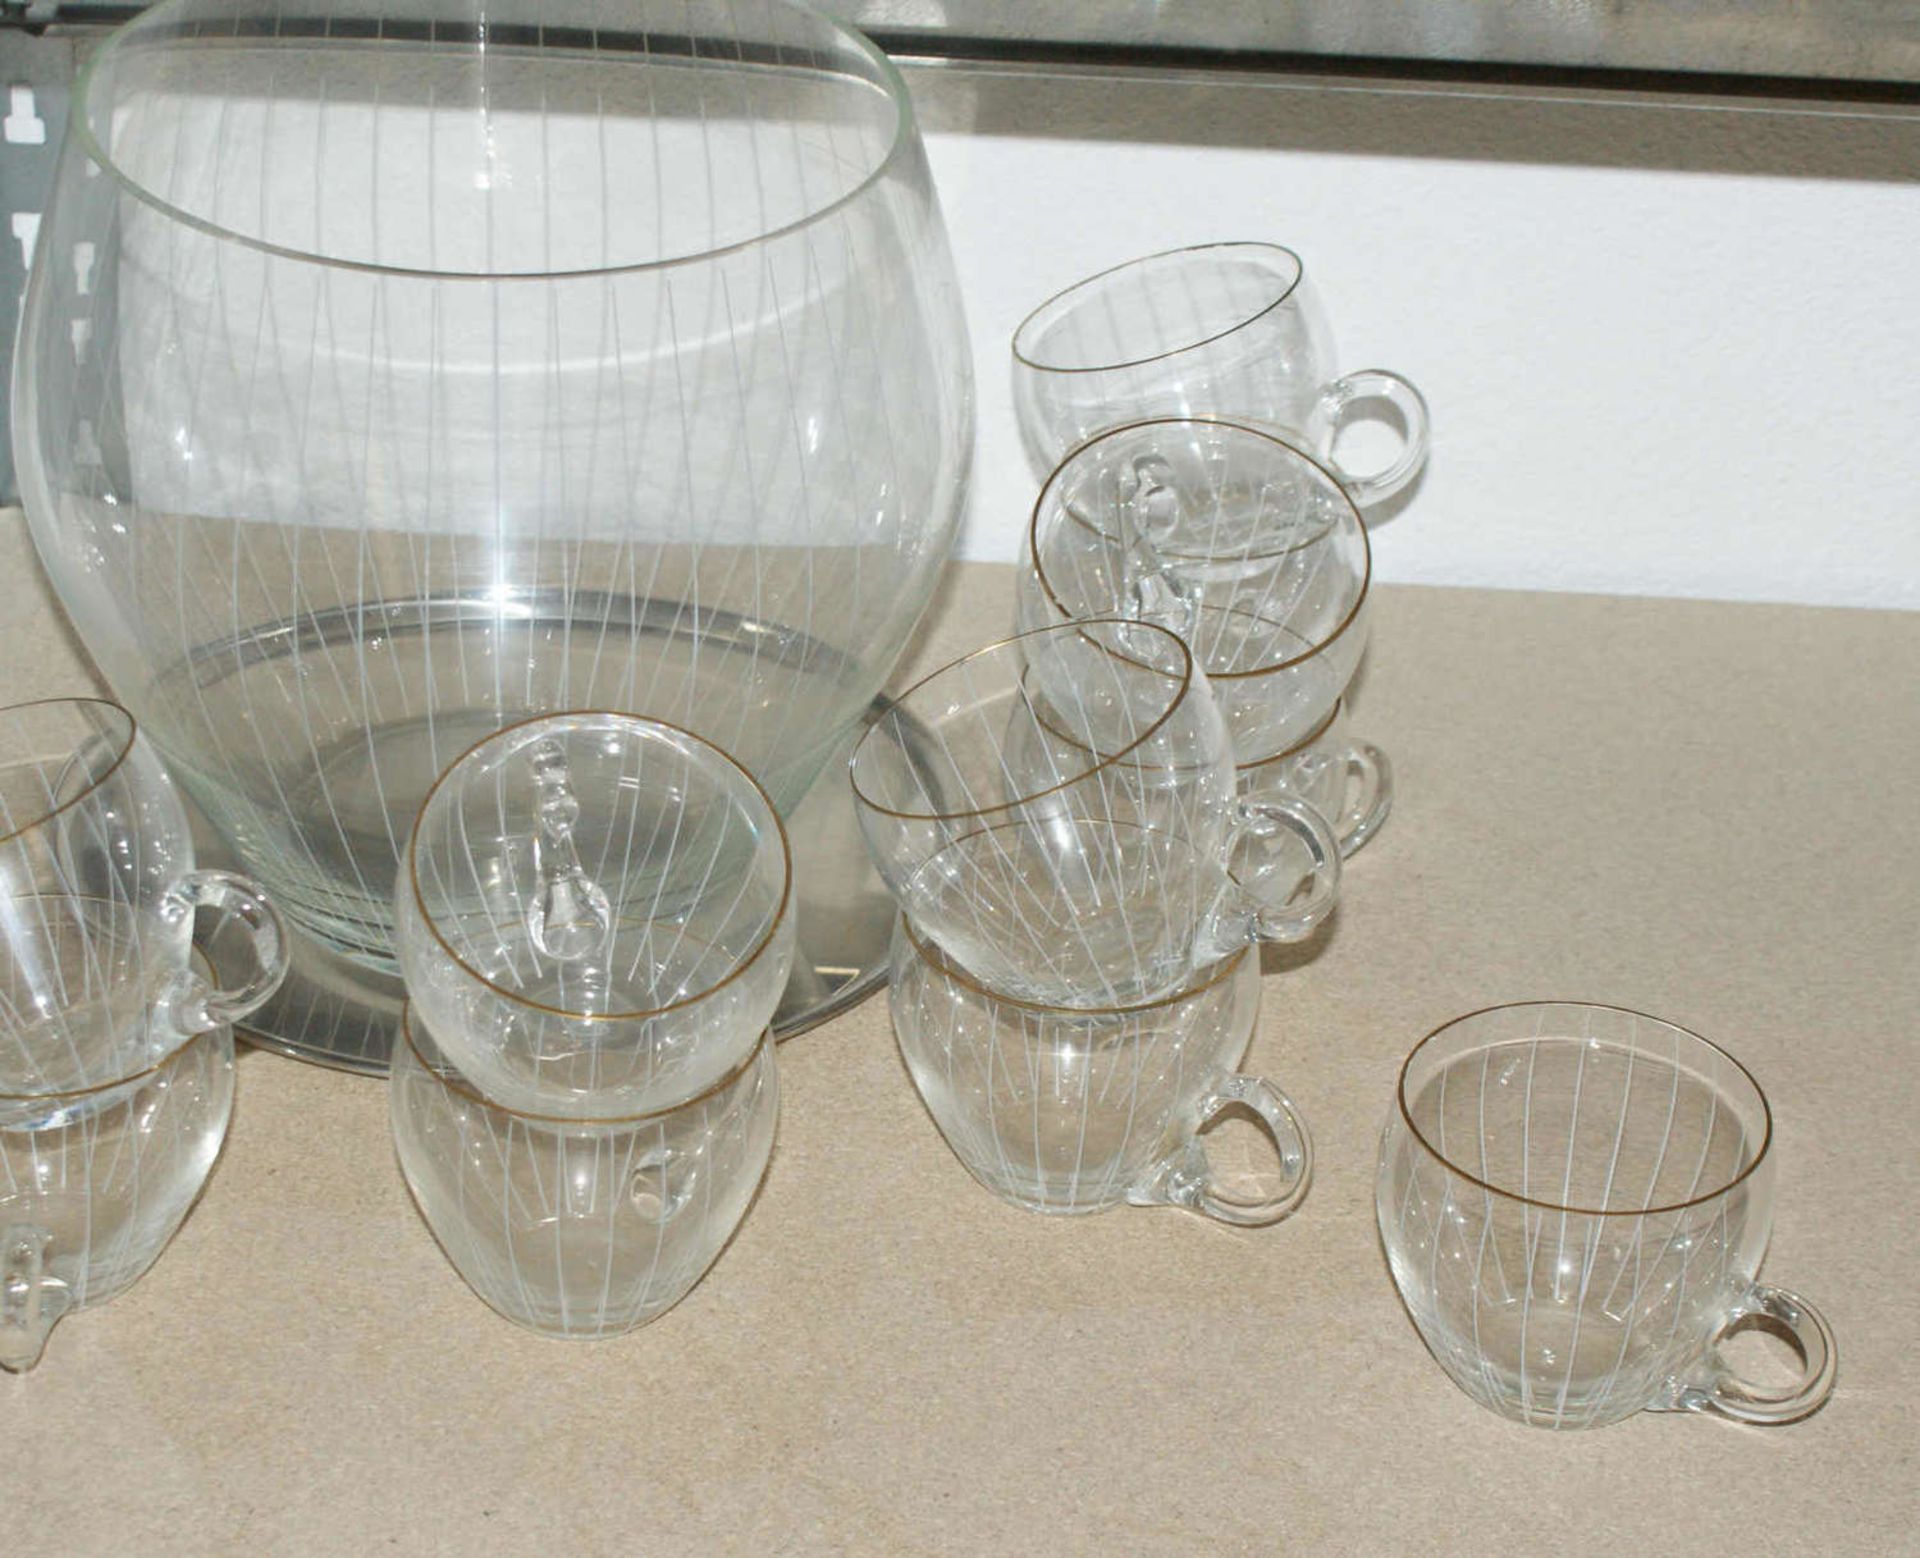 Bowleservice aus Glas, 50-60er Jahre, bestehend aus 1 Bowlegefäß ohne Deckel, 11 Bowle Gläser. - Bild 2 aus 2